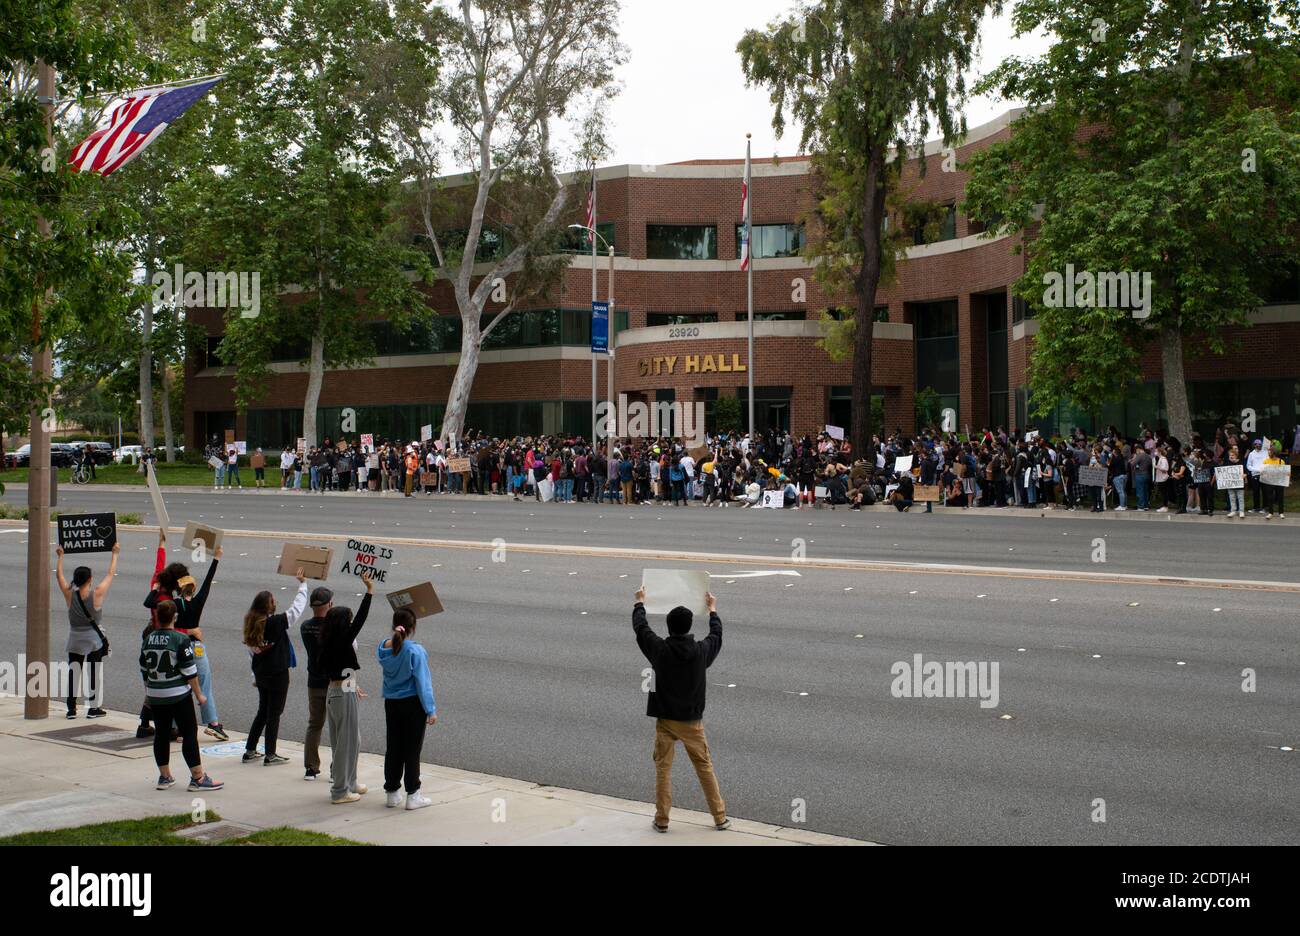 2020 Stati Uniti California Black vive la materia proteste. La Guardia nazionale dell'esercito e lo sceriffo della contea di Los Angeles osservano i manifestanti durante le dimostrazioni. Foto Stock